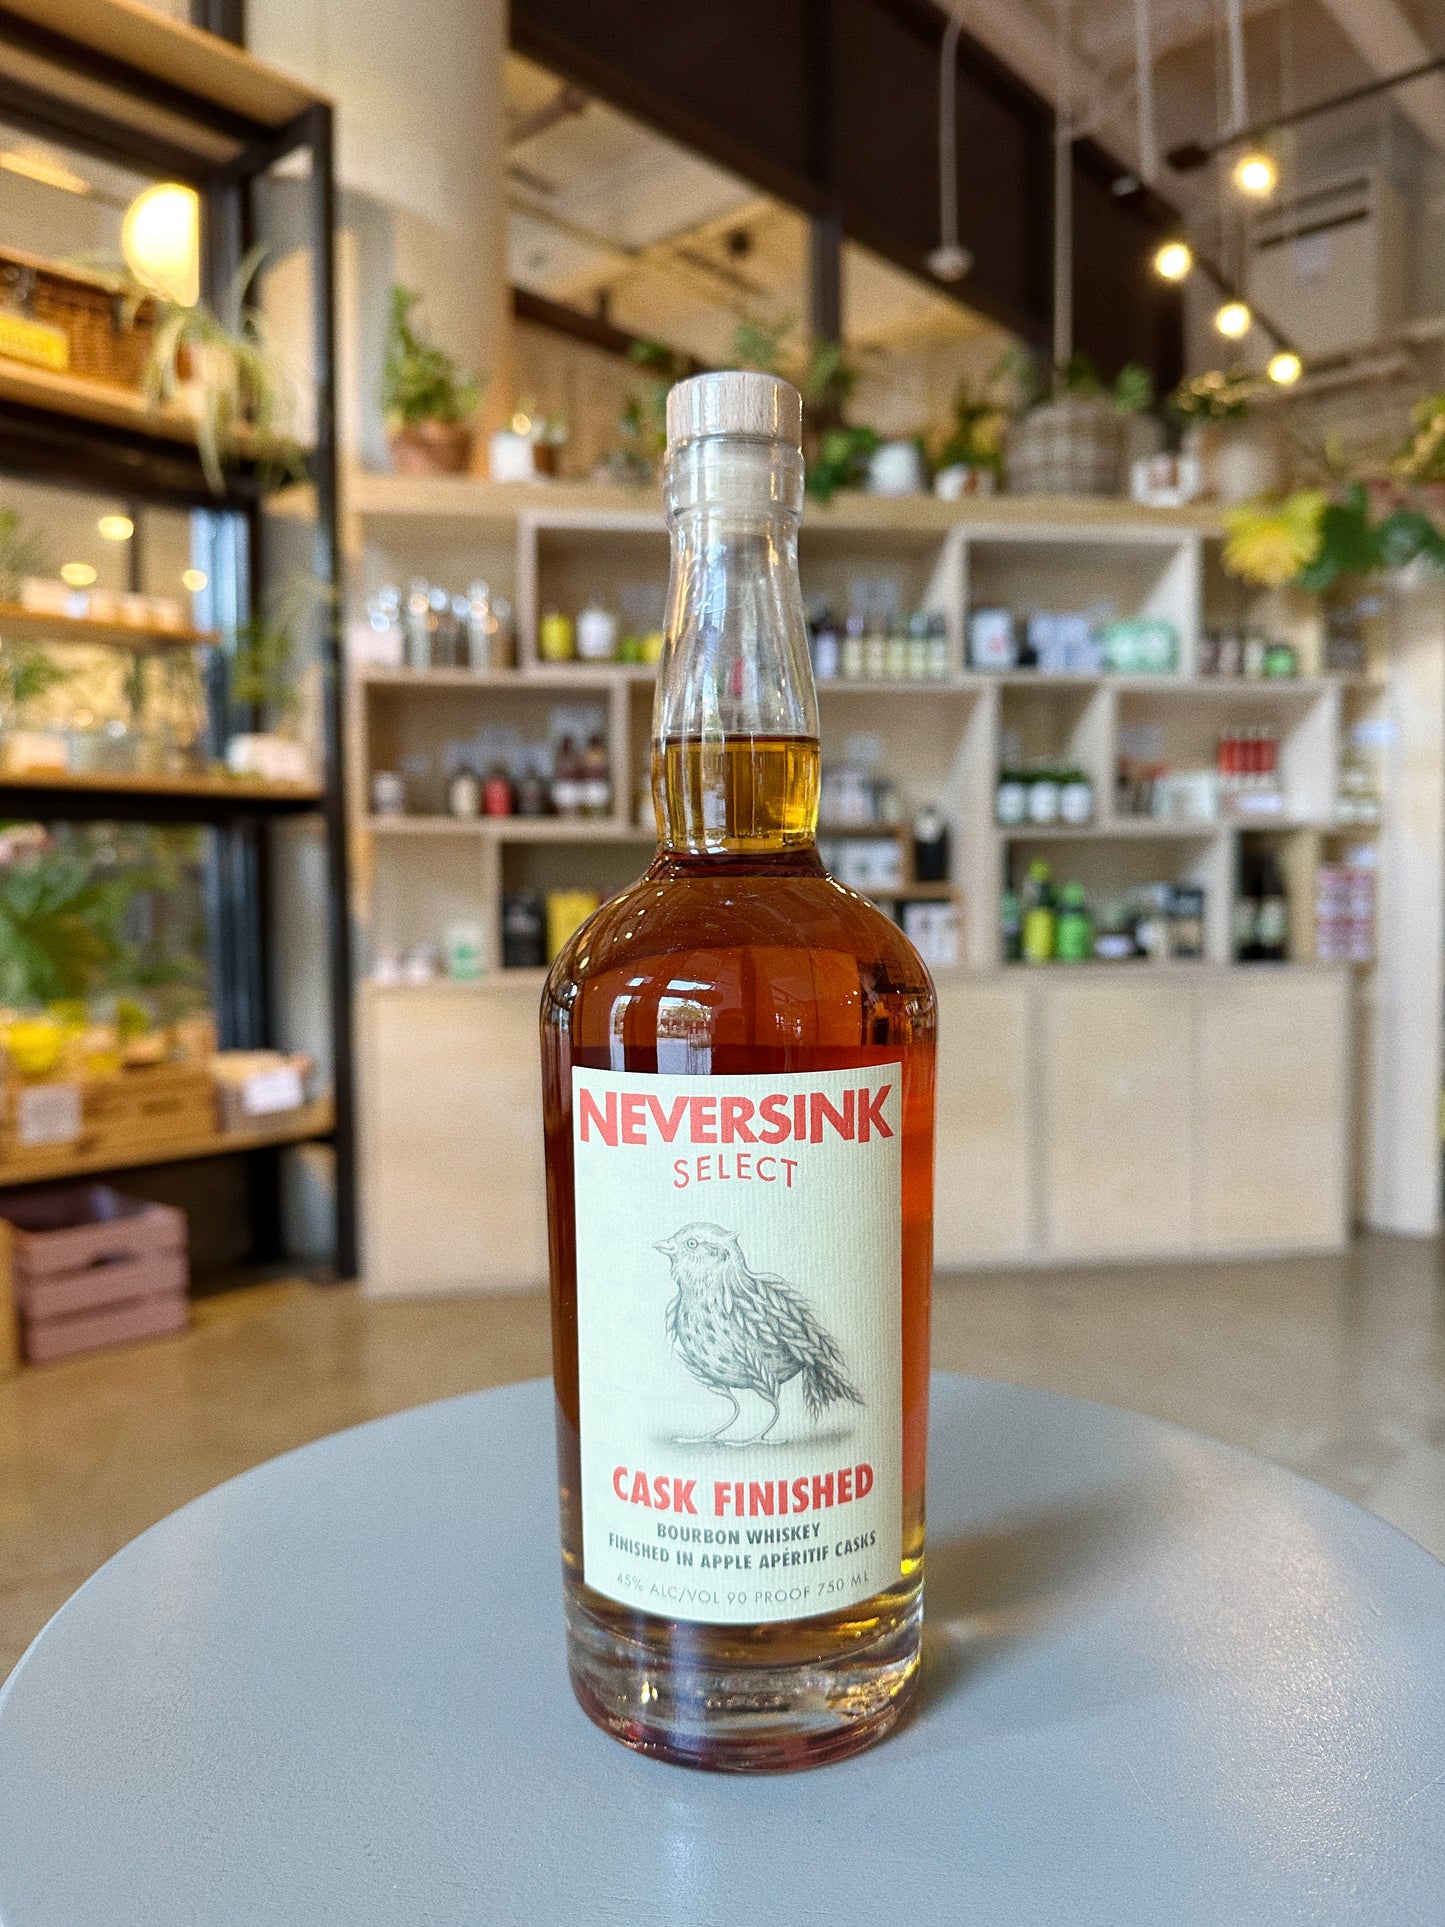 Neversink Bourbon Whiskey